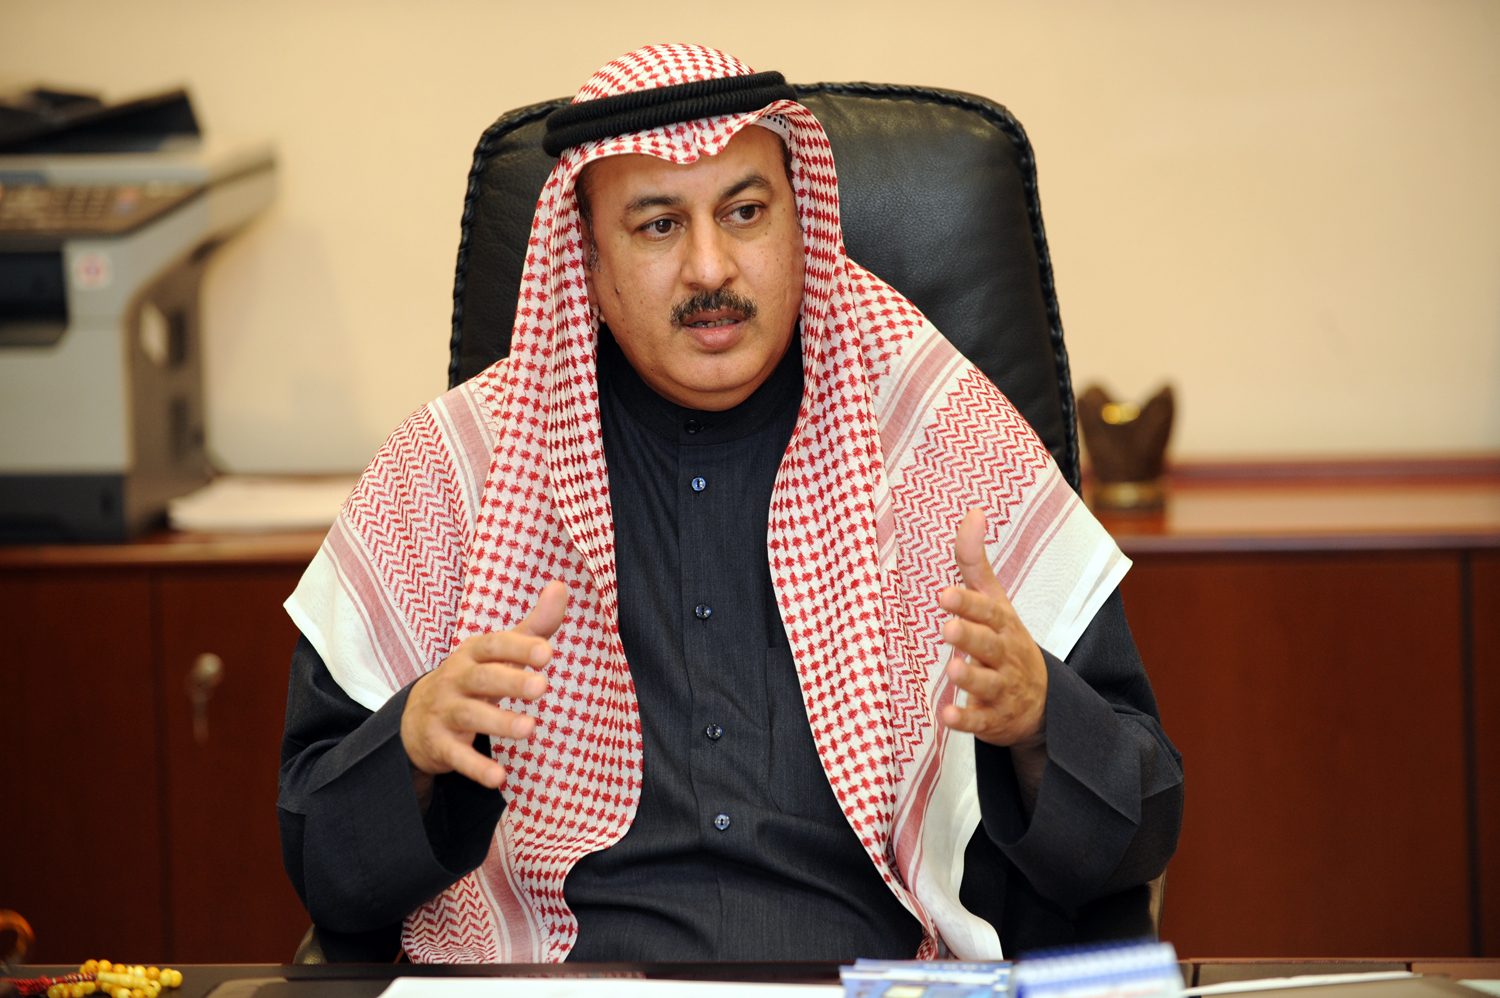 PACI Director General Musaed Al-Asousi